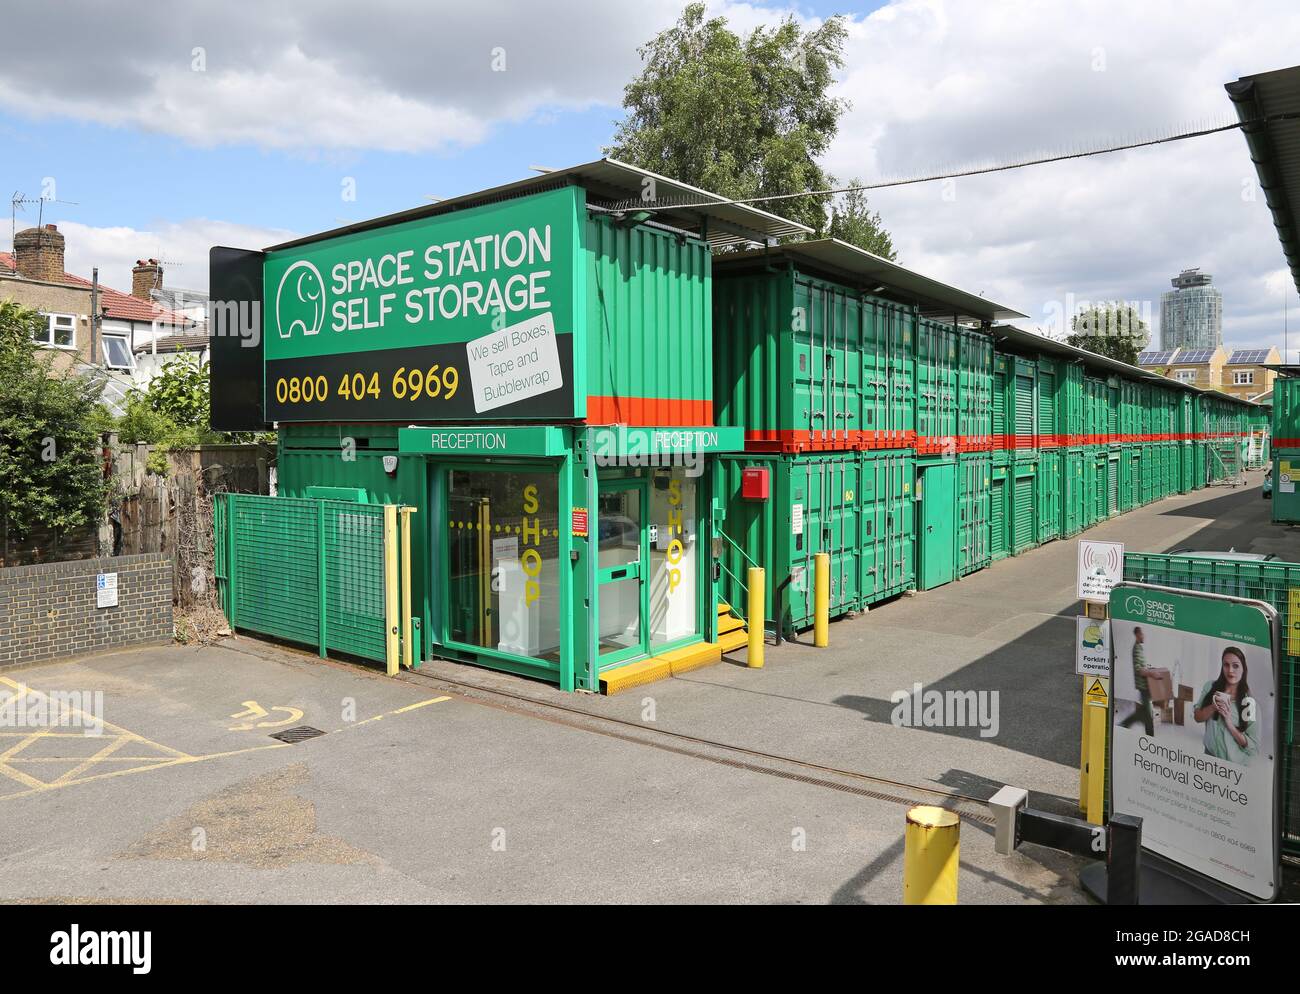 Deposito self-storage presso la stazione spaziale di Brentford, Londra, Regno Unito. Utilizza contenitori per la spedizione per garantire una conservazione sicura. Foto Stock